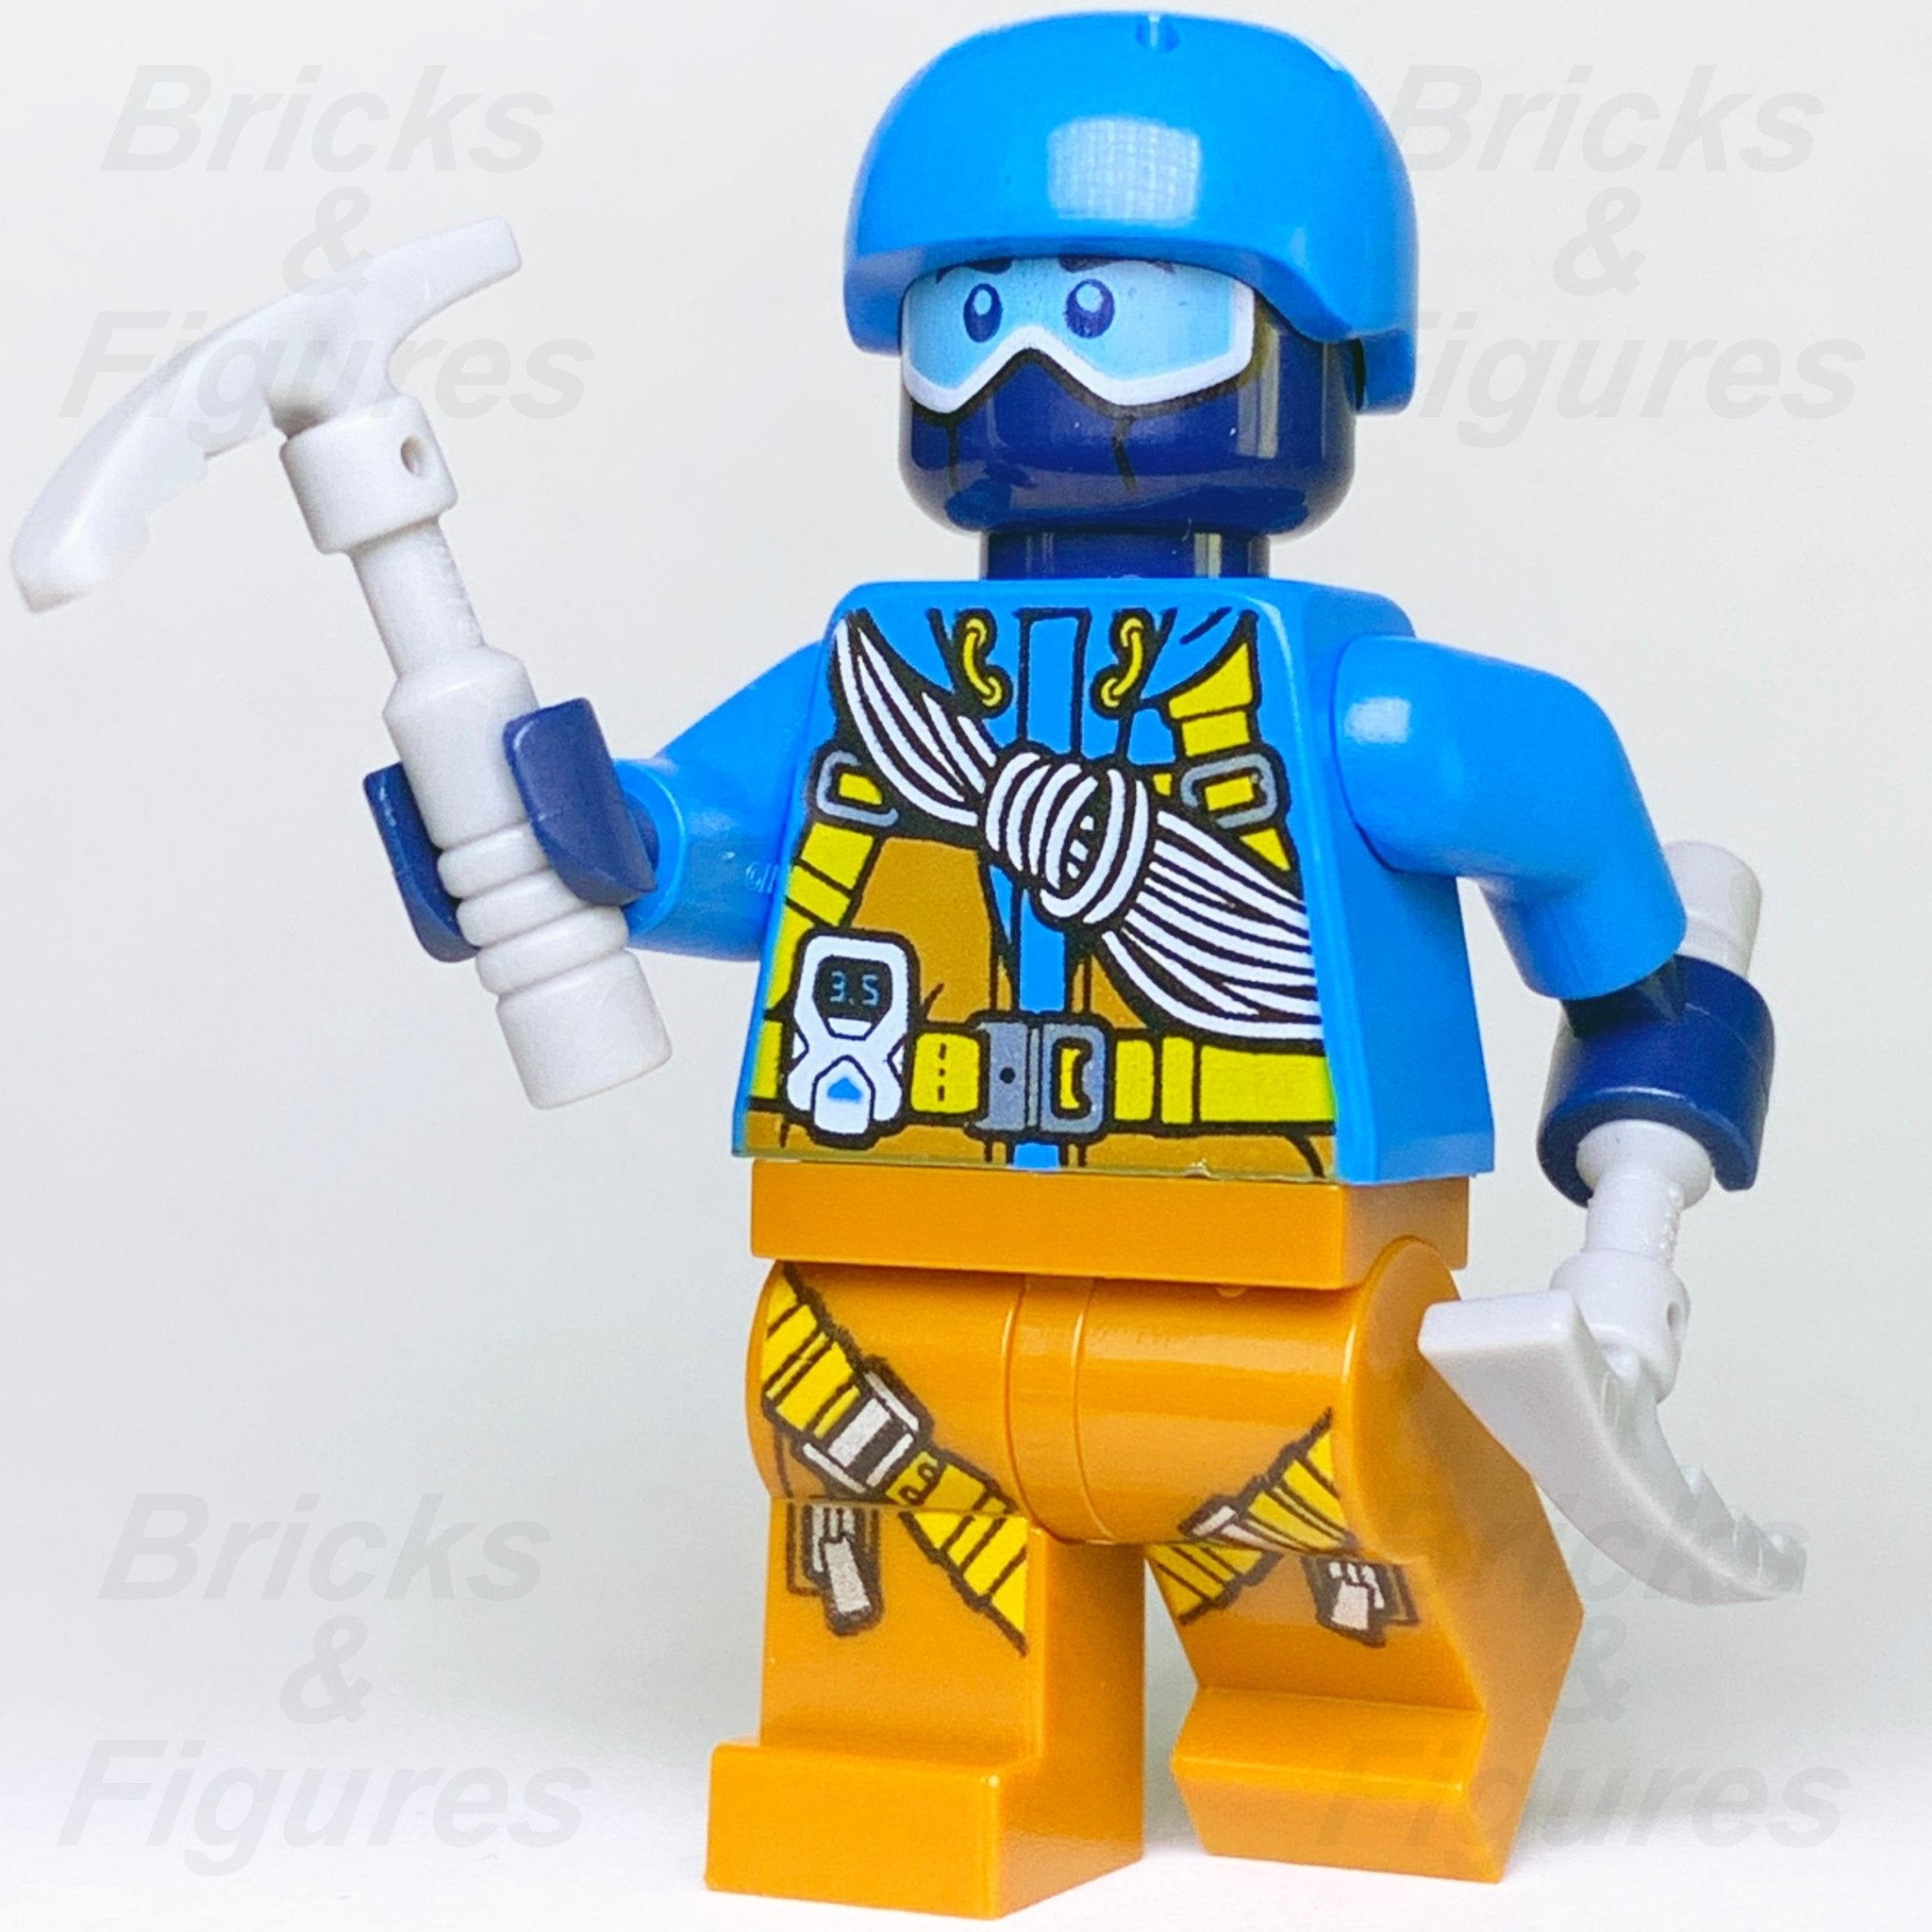 LEGO® City Minifigures, Shop Now